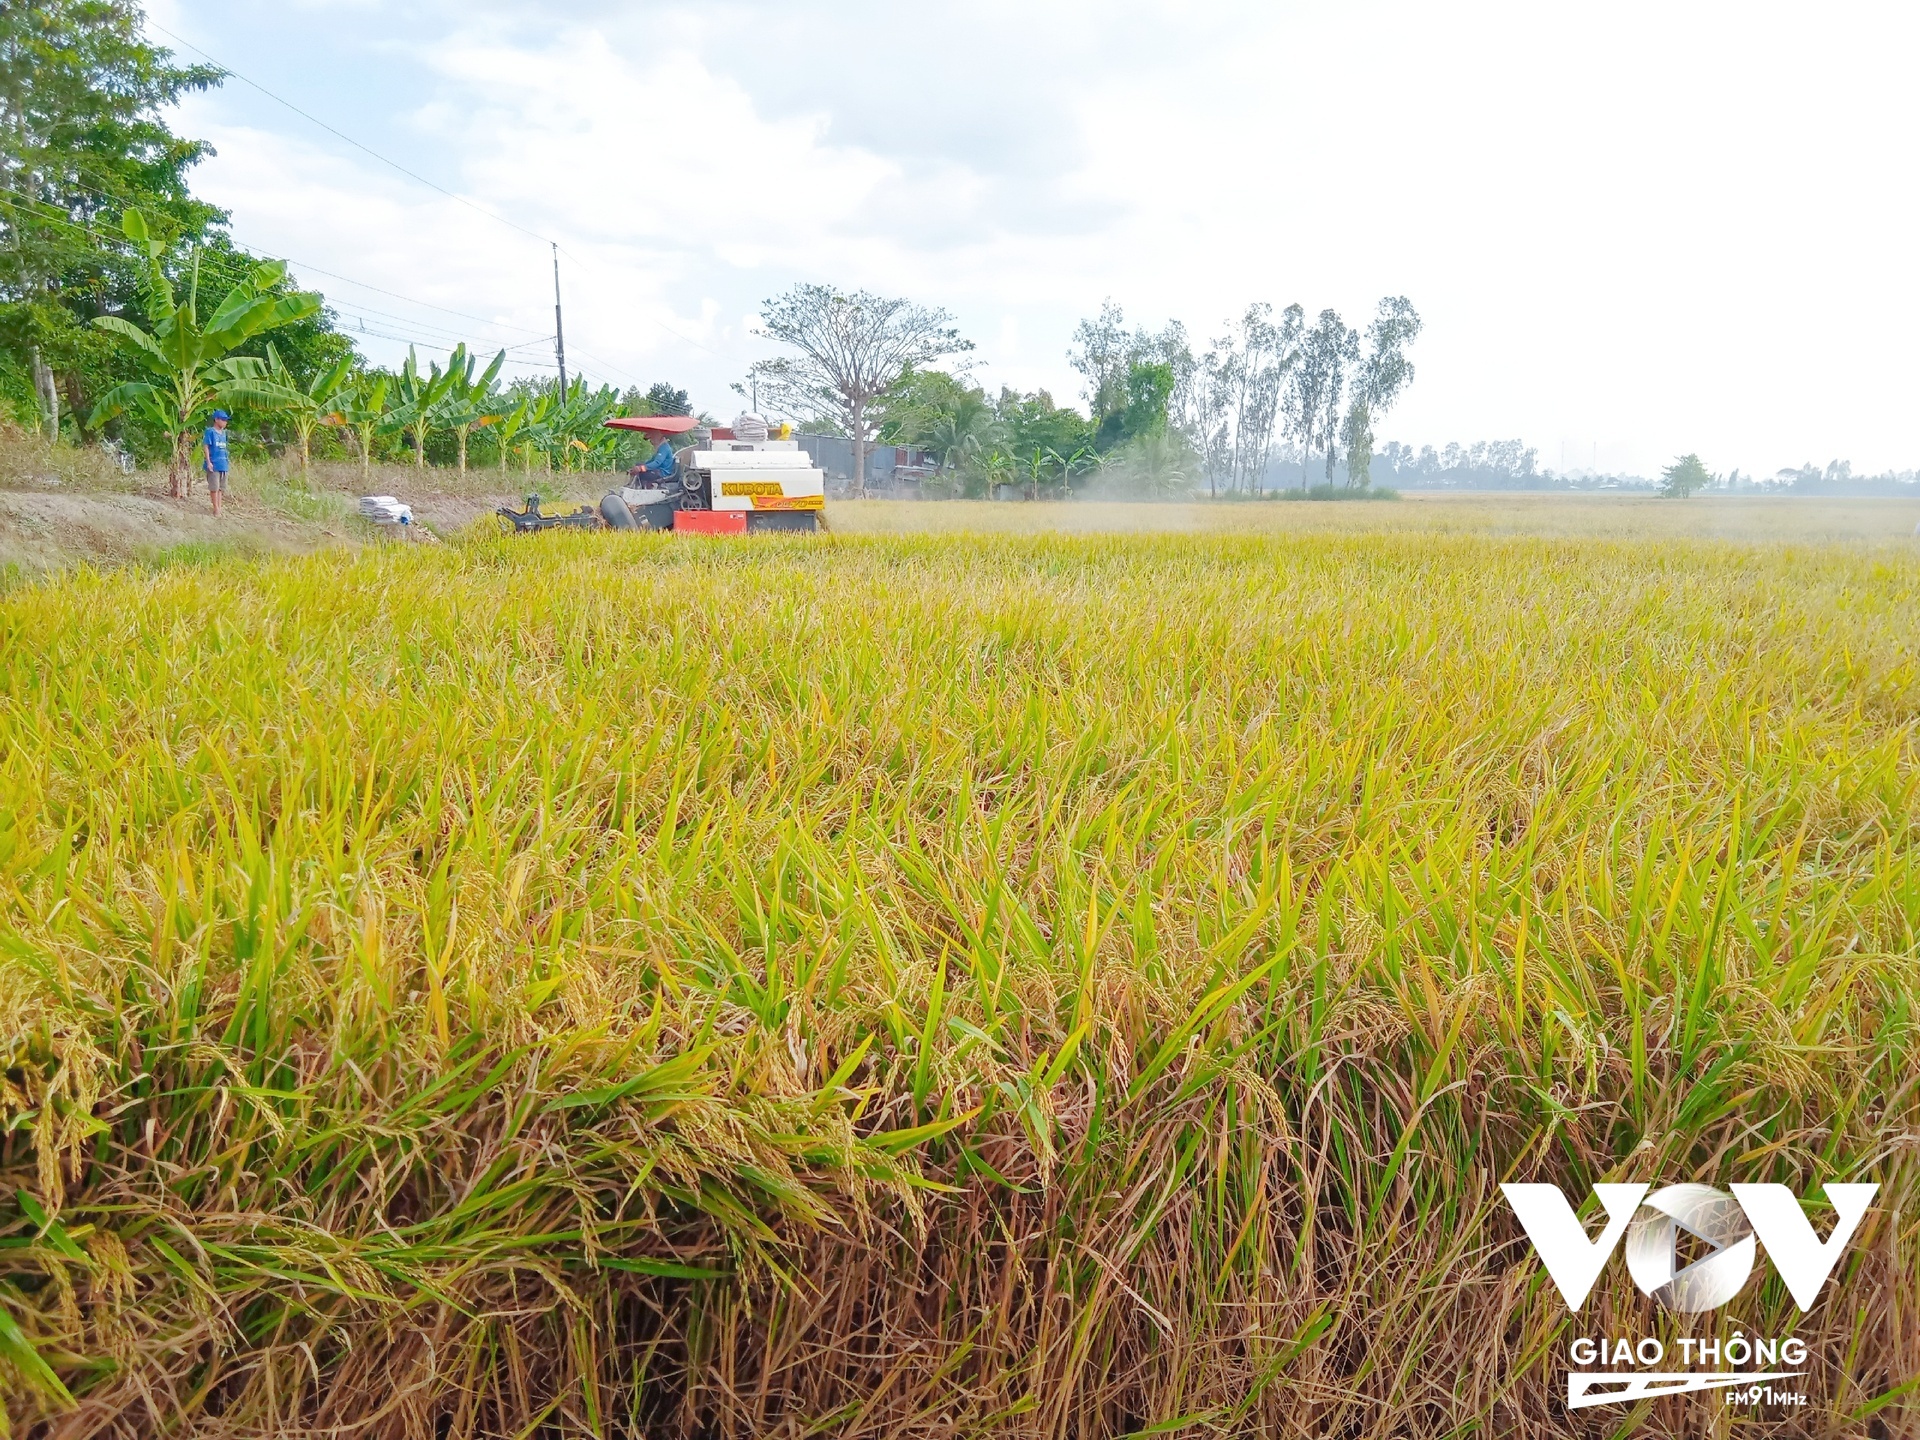 Ngành gạo của Việt Nam đi từ cạnh tranh về giá thành sang cạnh tranh về chất lượng, dinh dưỡng và tính bền vững.